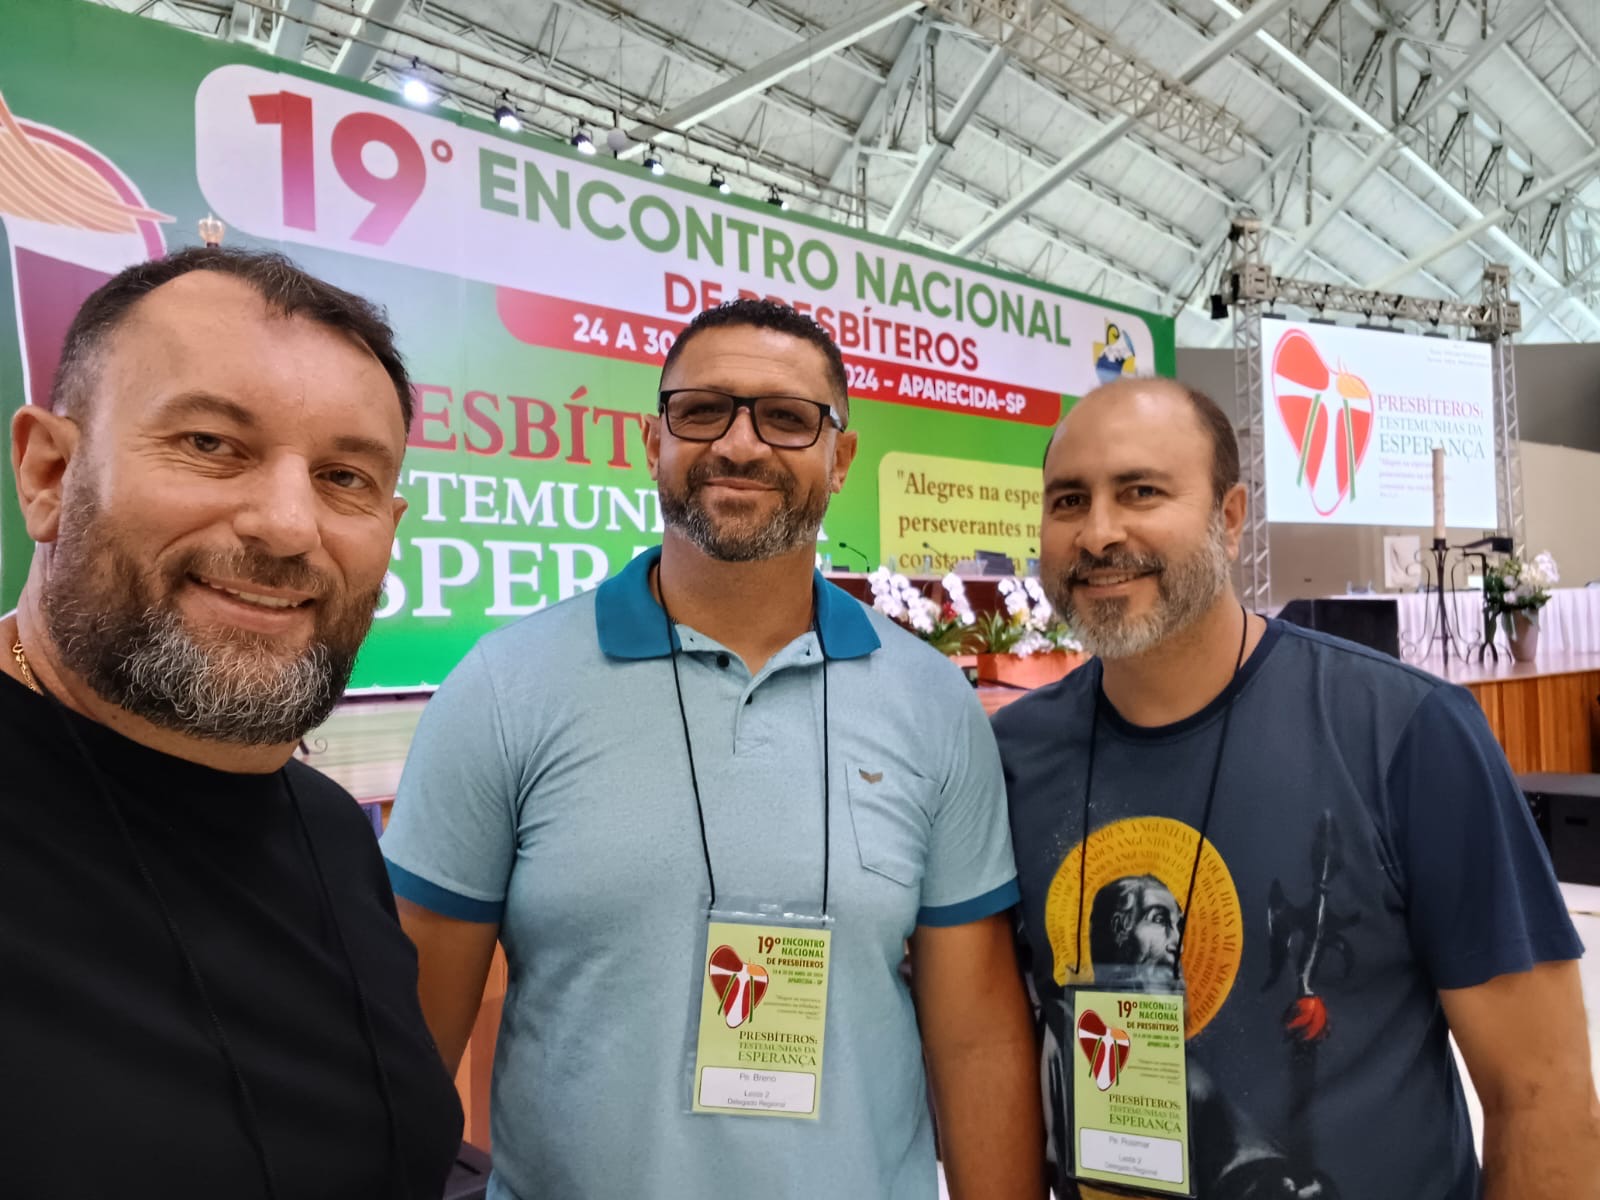 Foto de Padres Carlos Antônio, Rosimar e Breno participam de encontro nacional dos presbíteros, em Aparecida